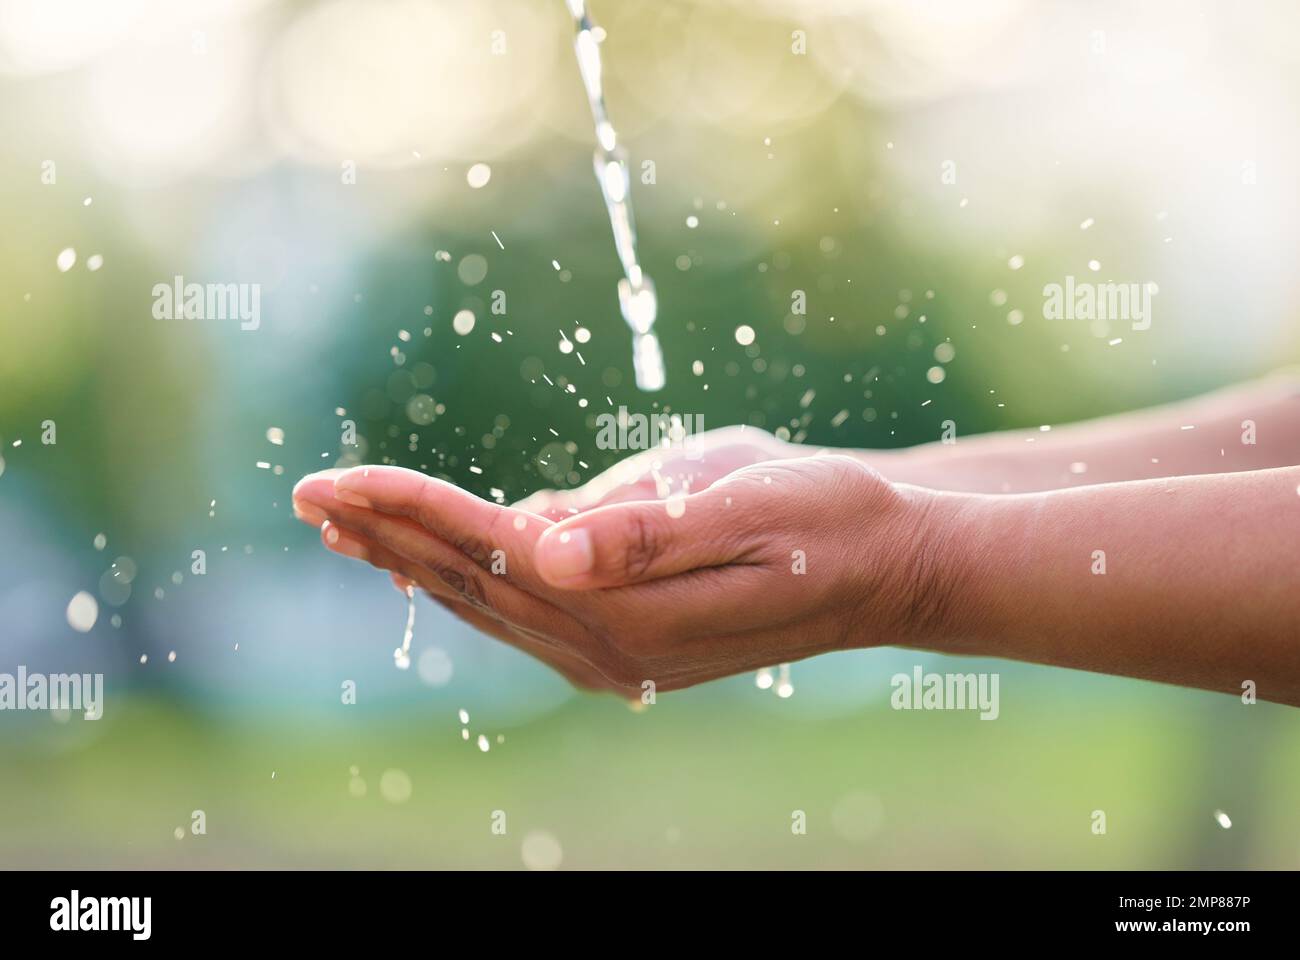 Draußen, Hände und Mensch mit natürlichem Wasser zum Waschen, Reinigen oder für Körperhygiene. Natürliche, organische und afrikanische männliche Hand mit Aqua zum Waschen Stockfoto